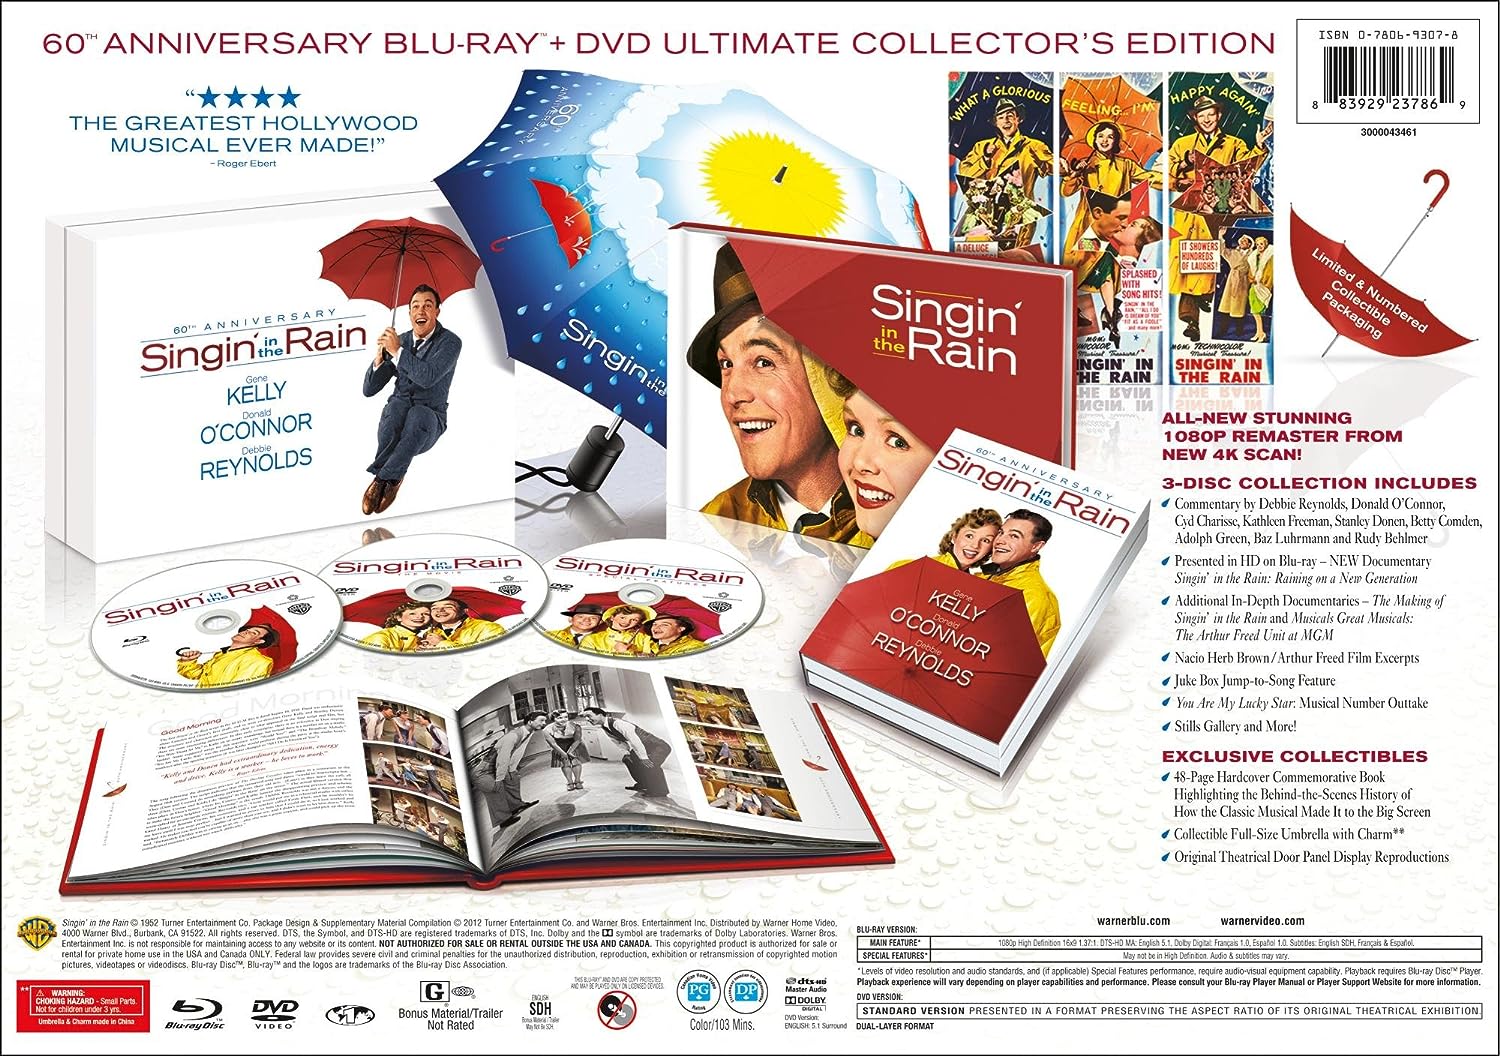 Поющие под дождем (русские субтитры) [Коллекционное издание к 60-летнему юбилею] (Blu-ray + 2 DVD)